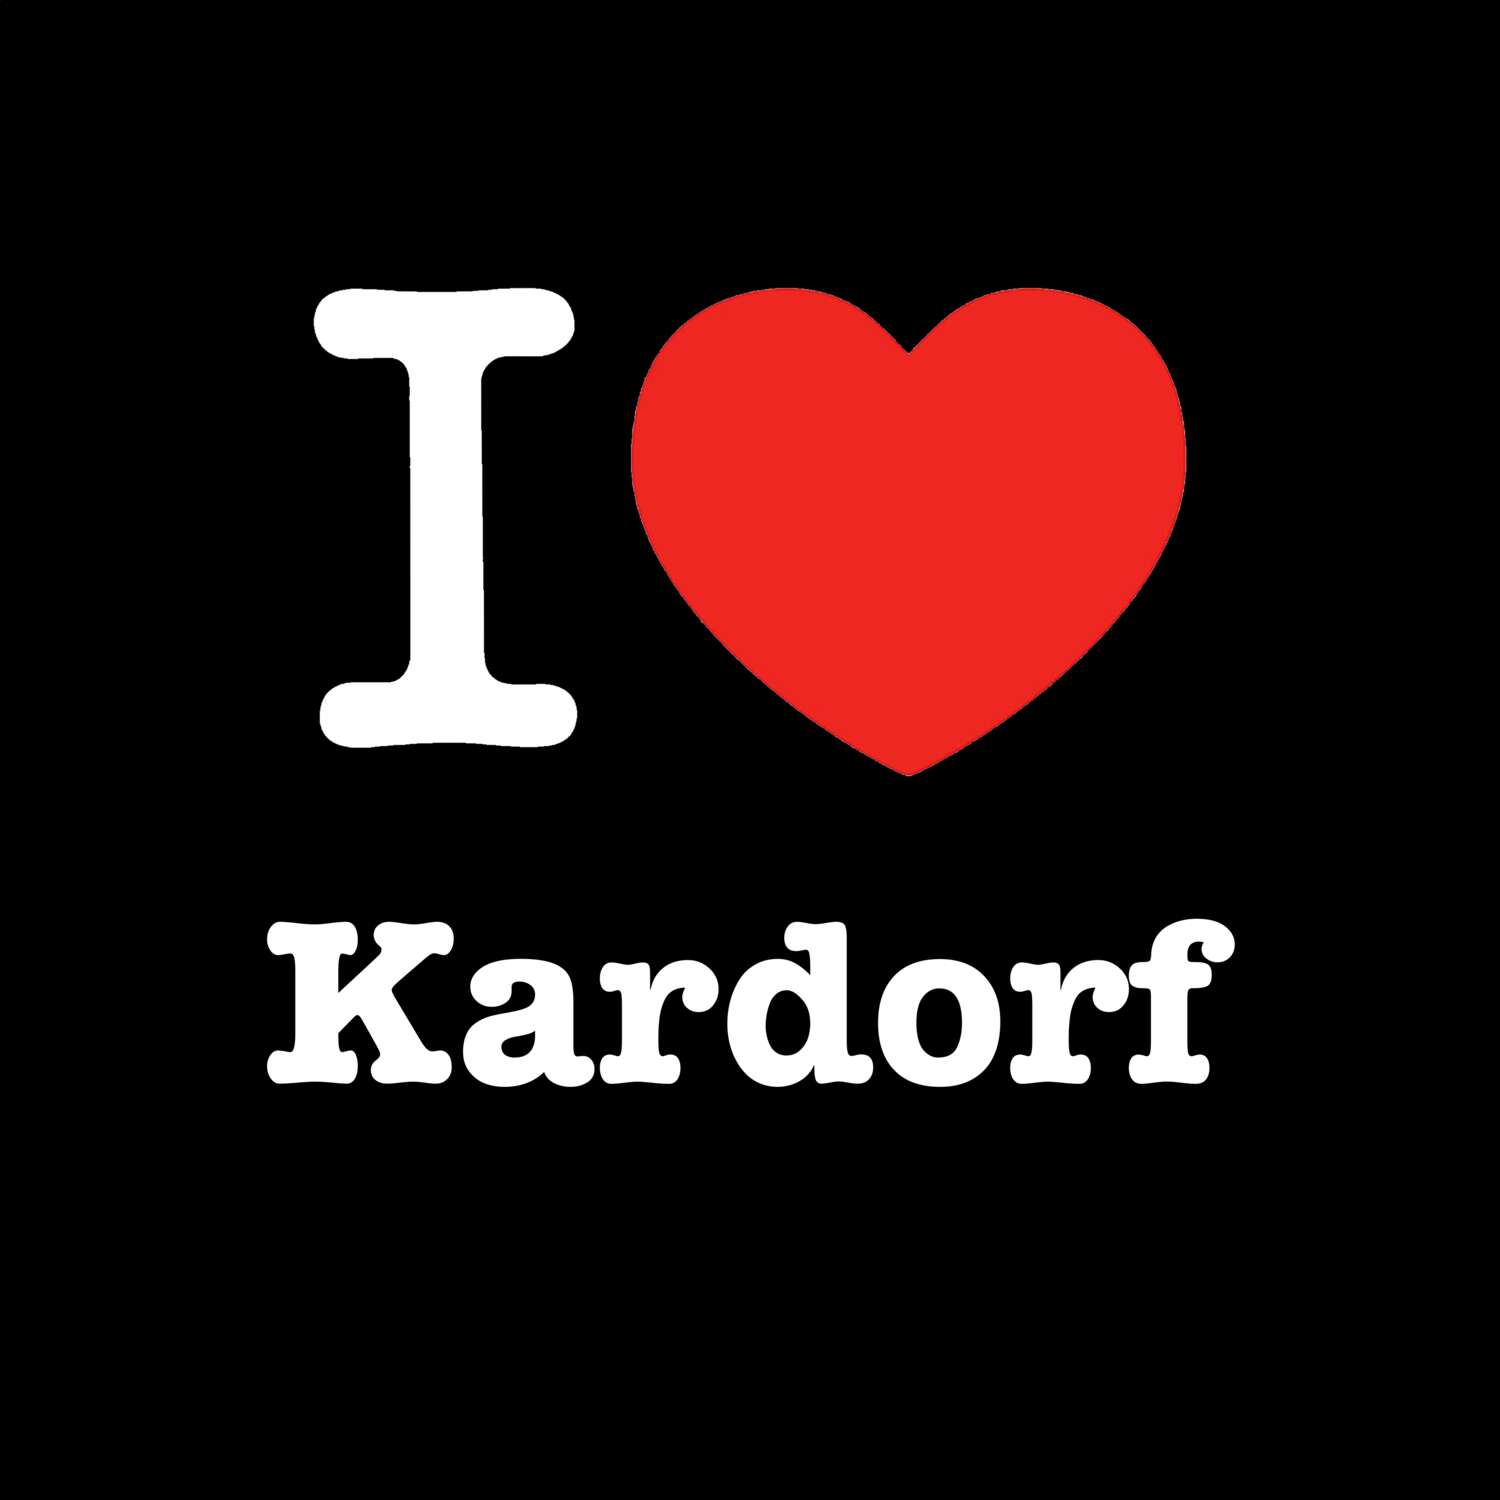 Kardorf T-Shirt »I love«